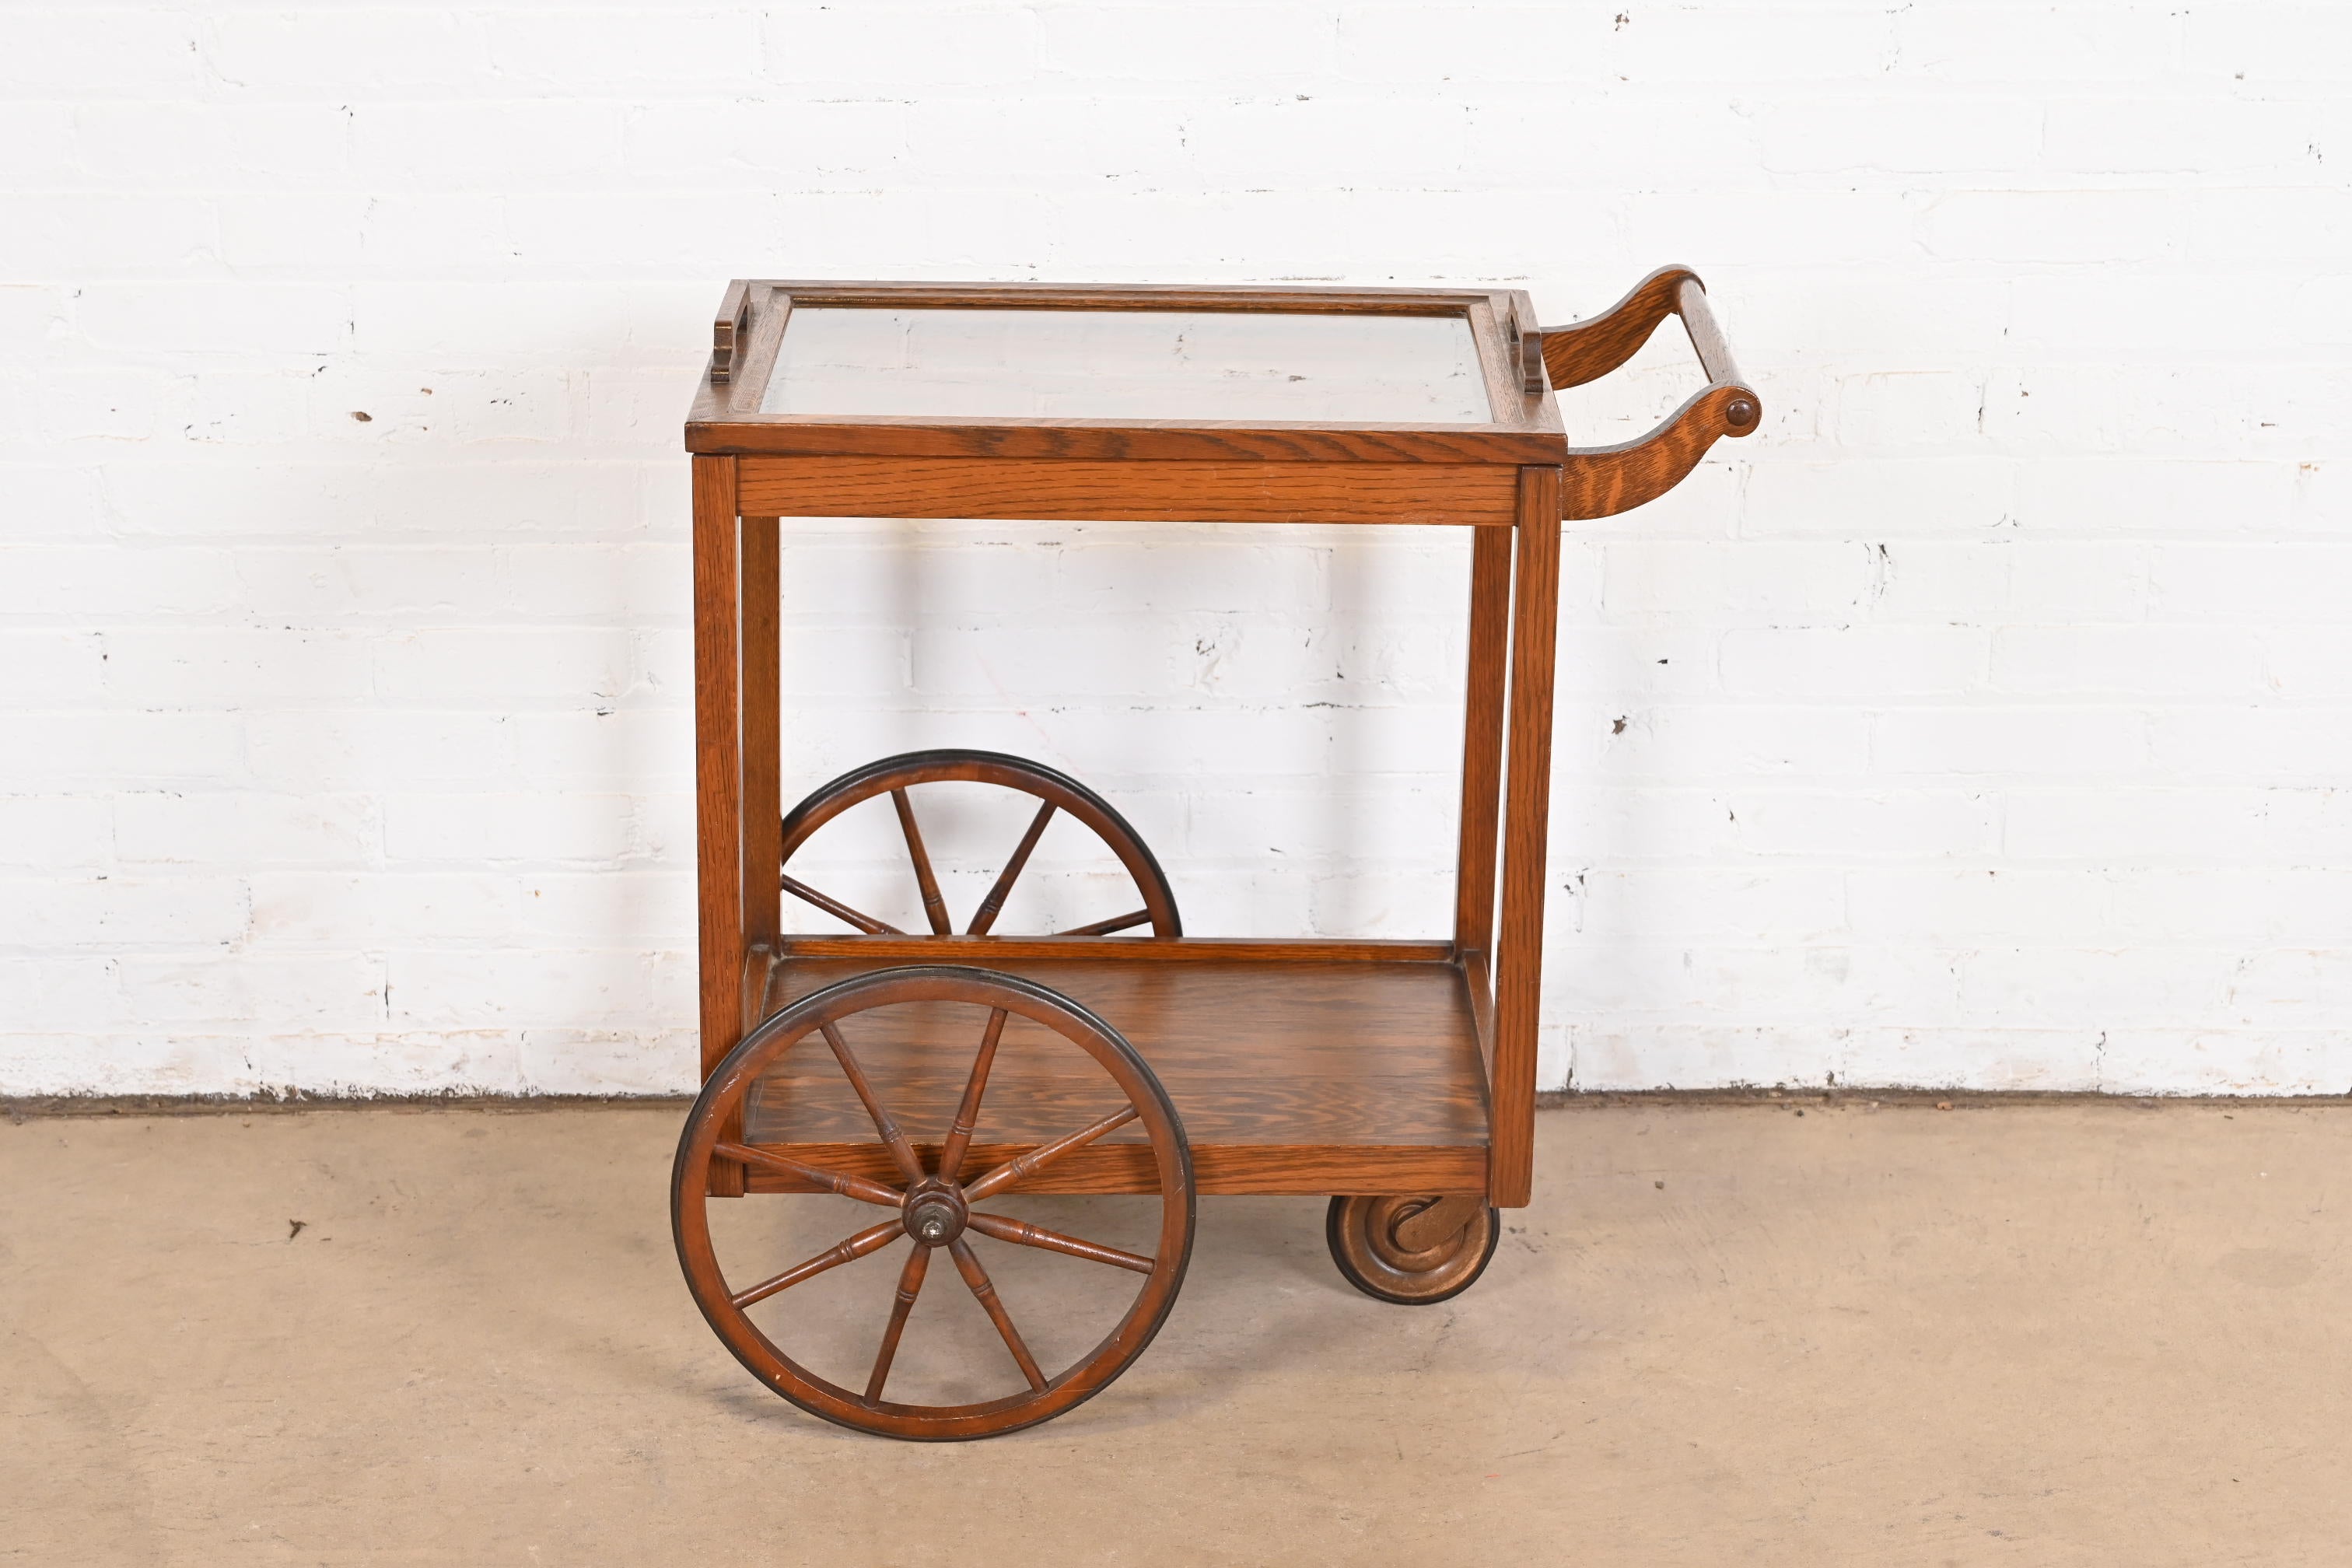 Ein außergewöhnlicher Teewagen im Arts & Crafts- oder Missionsstil oder ein Barwagen

Von Gebrüder Stickley

USA, ca. 1900

Eiche, mit abnehmbarem Glastablett.

Maße: 28,5 